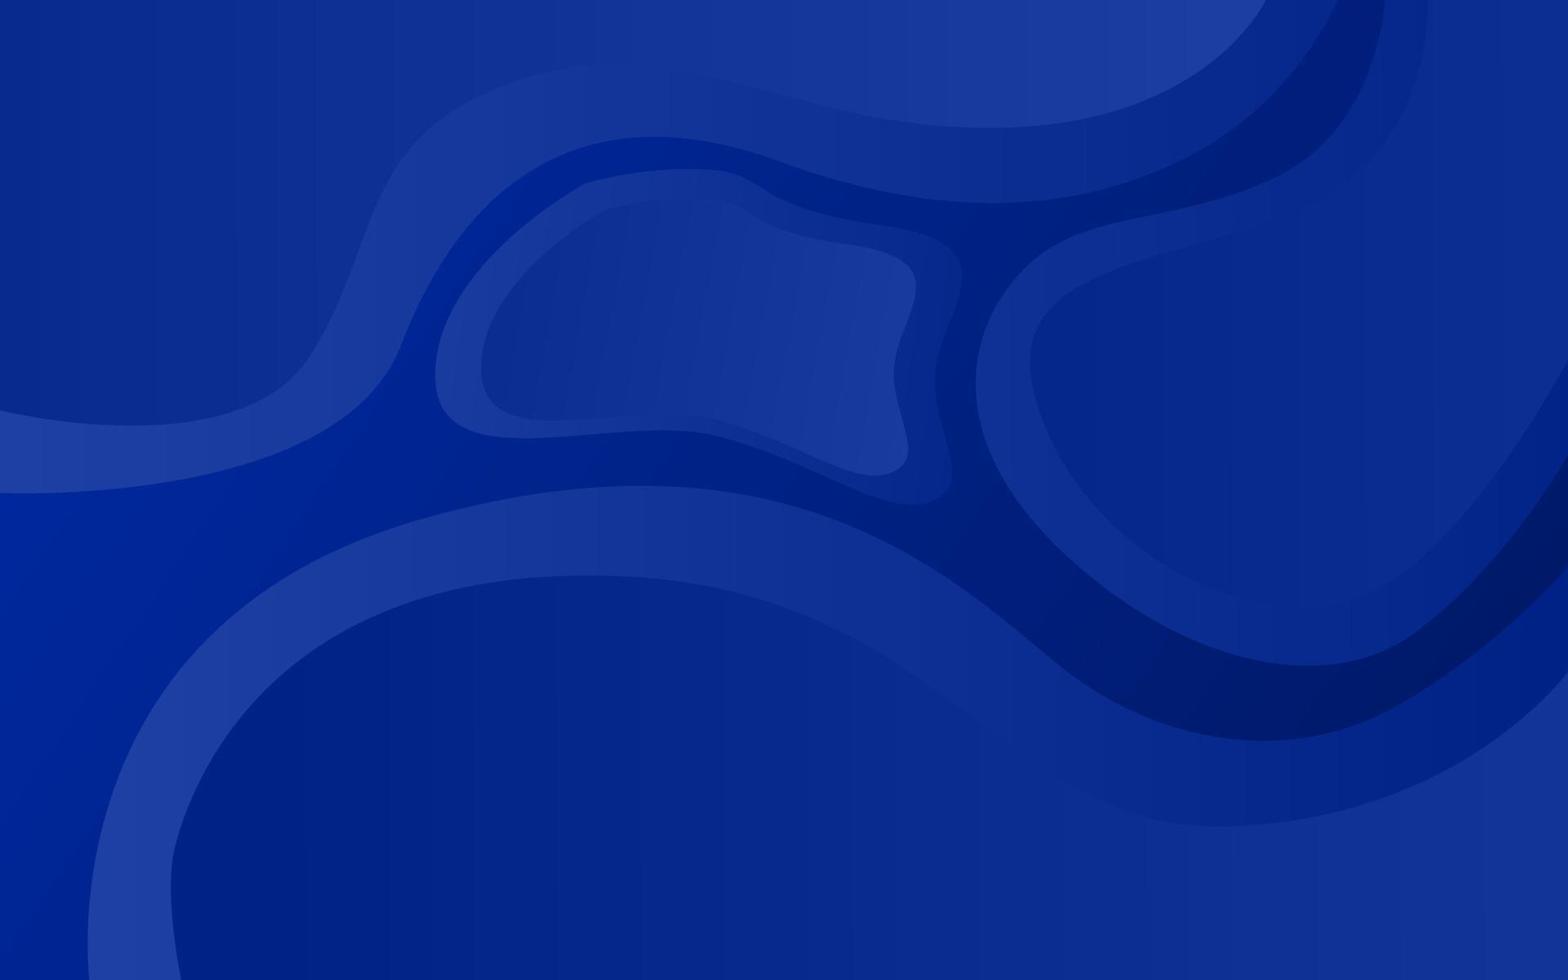 abstraktes Hintergrunddesign in blauer Farbe. Designs für Business-Vorlagen, Websites und Banner. abstrakte Dekoration-Vektor-Illustration. dunkelblauer Hintergrund vektor